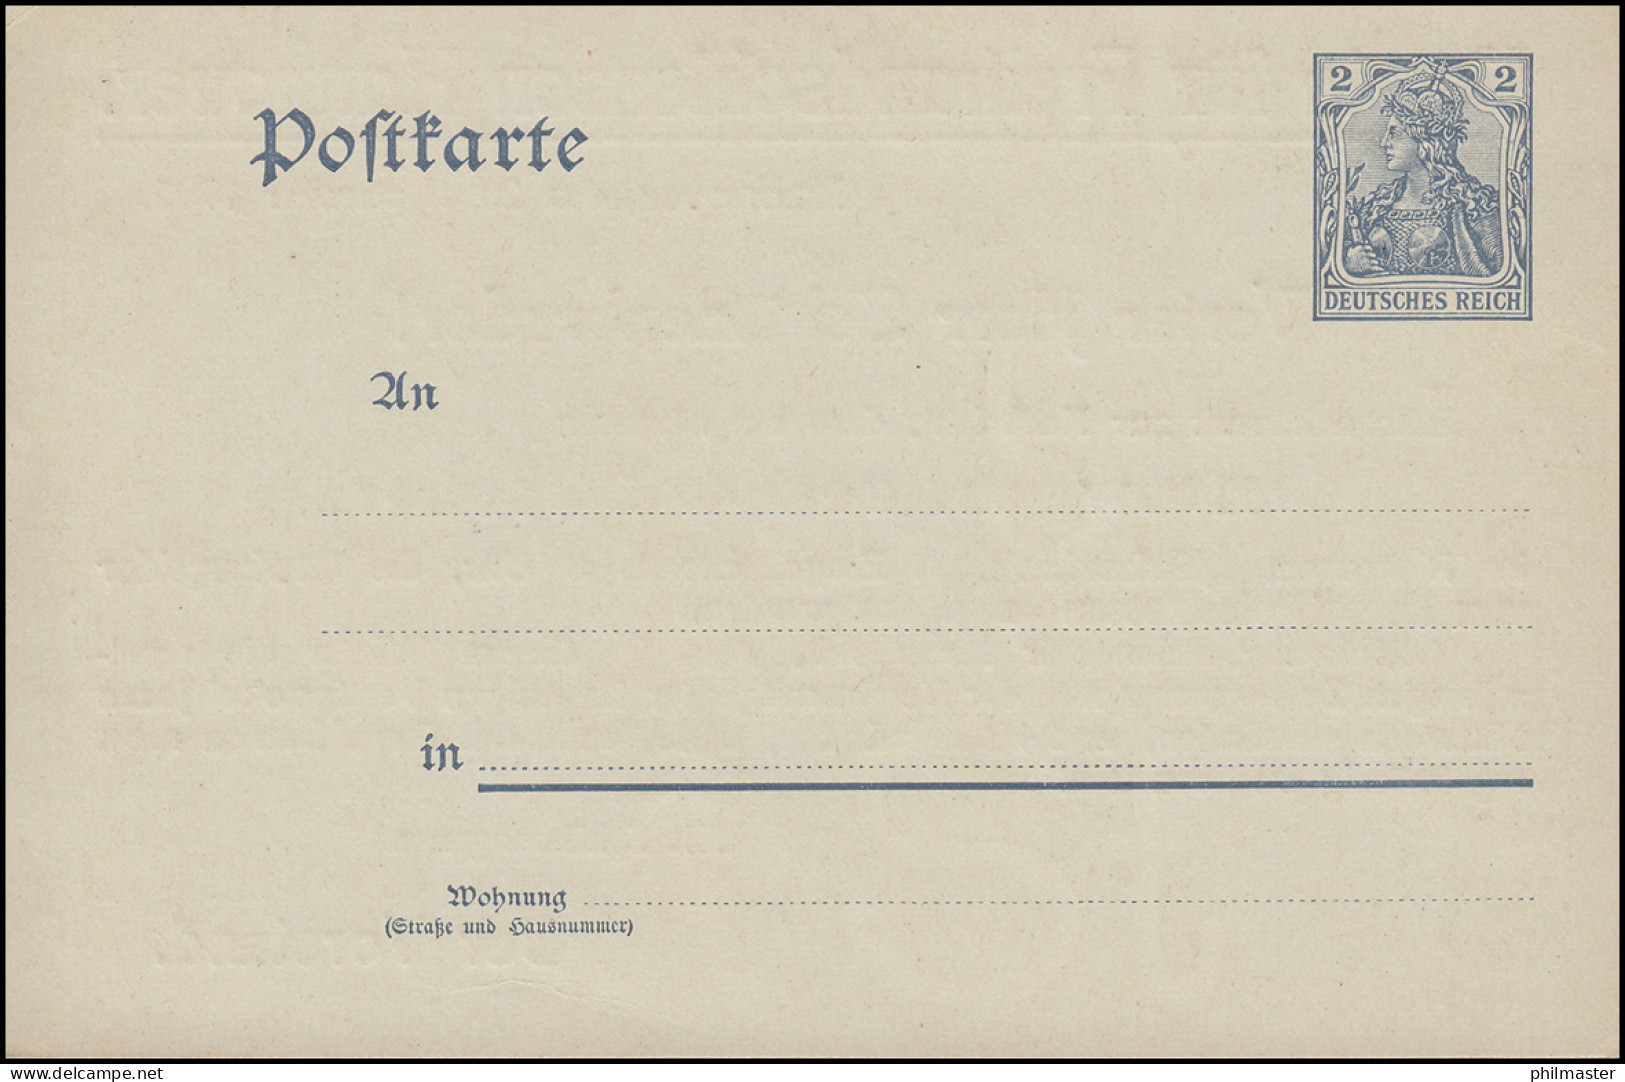 Postkarte P 57X Mit Zudruck Verein Für Freihandschießen Hannover, Ungebraucht ** - Tir (Armes)